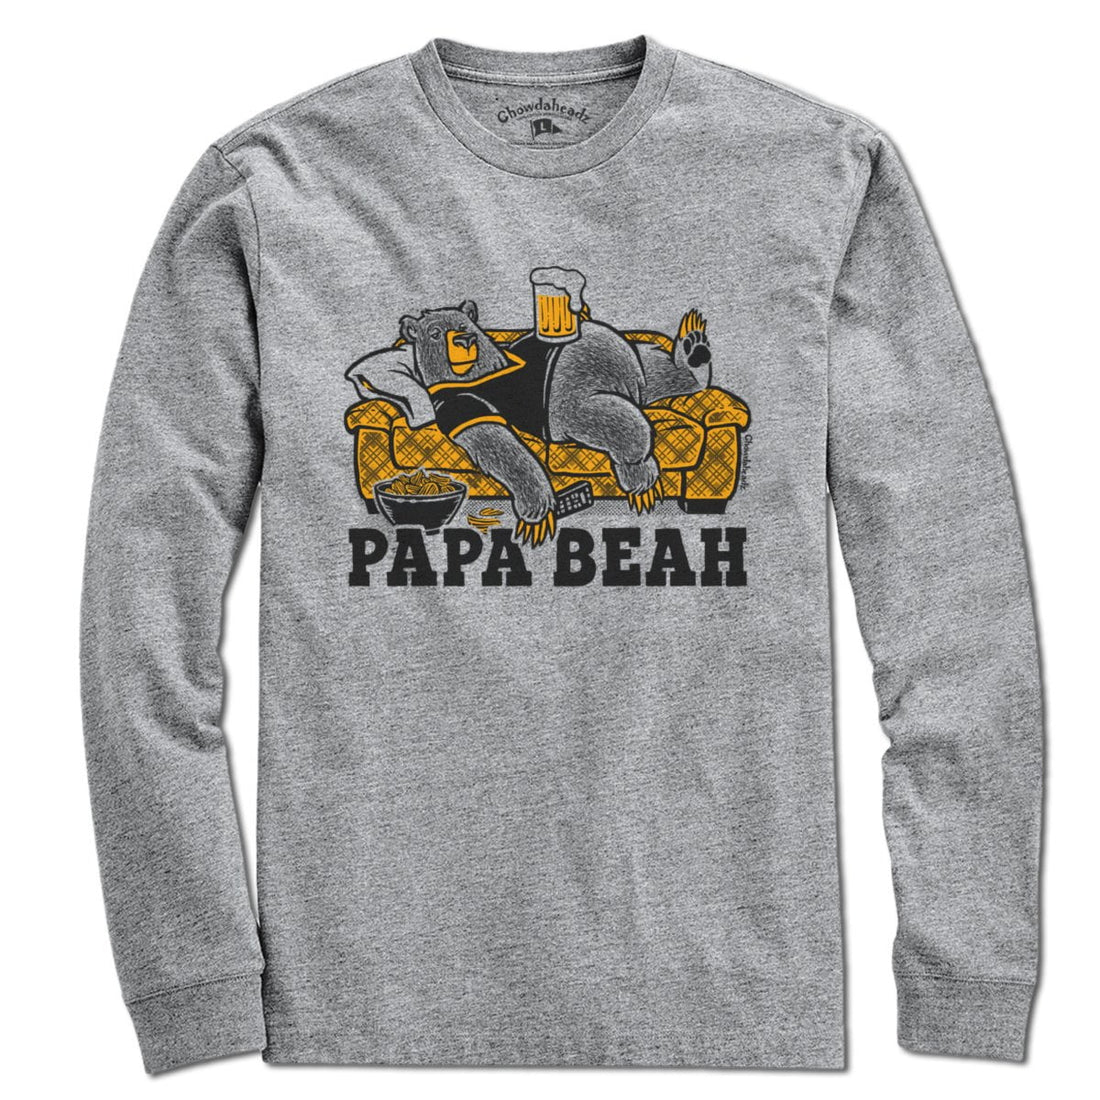 Papa Beah T-Shirt - Chowdaheadz